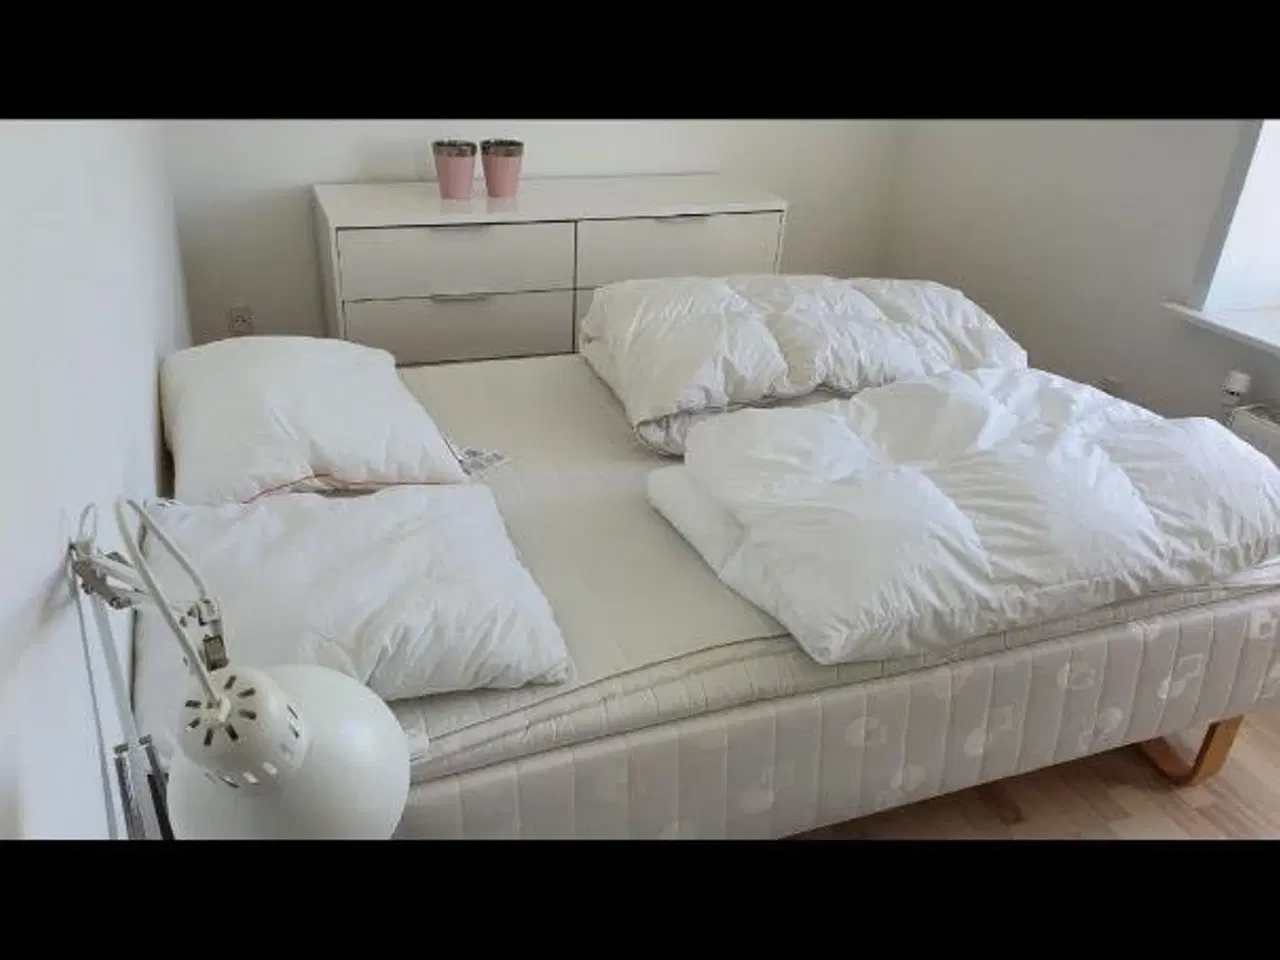 Billede 1 - En såkaldt dansk seng.